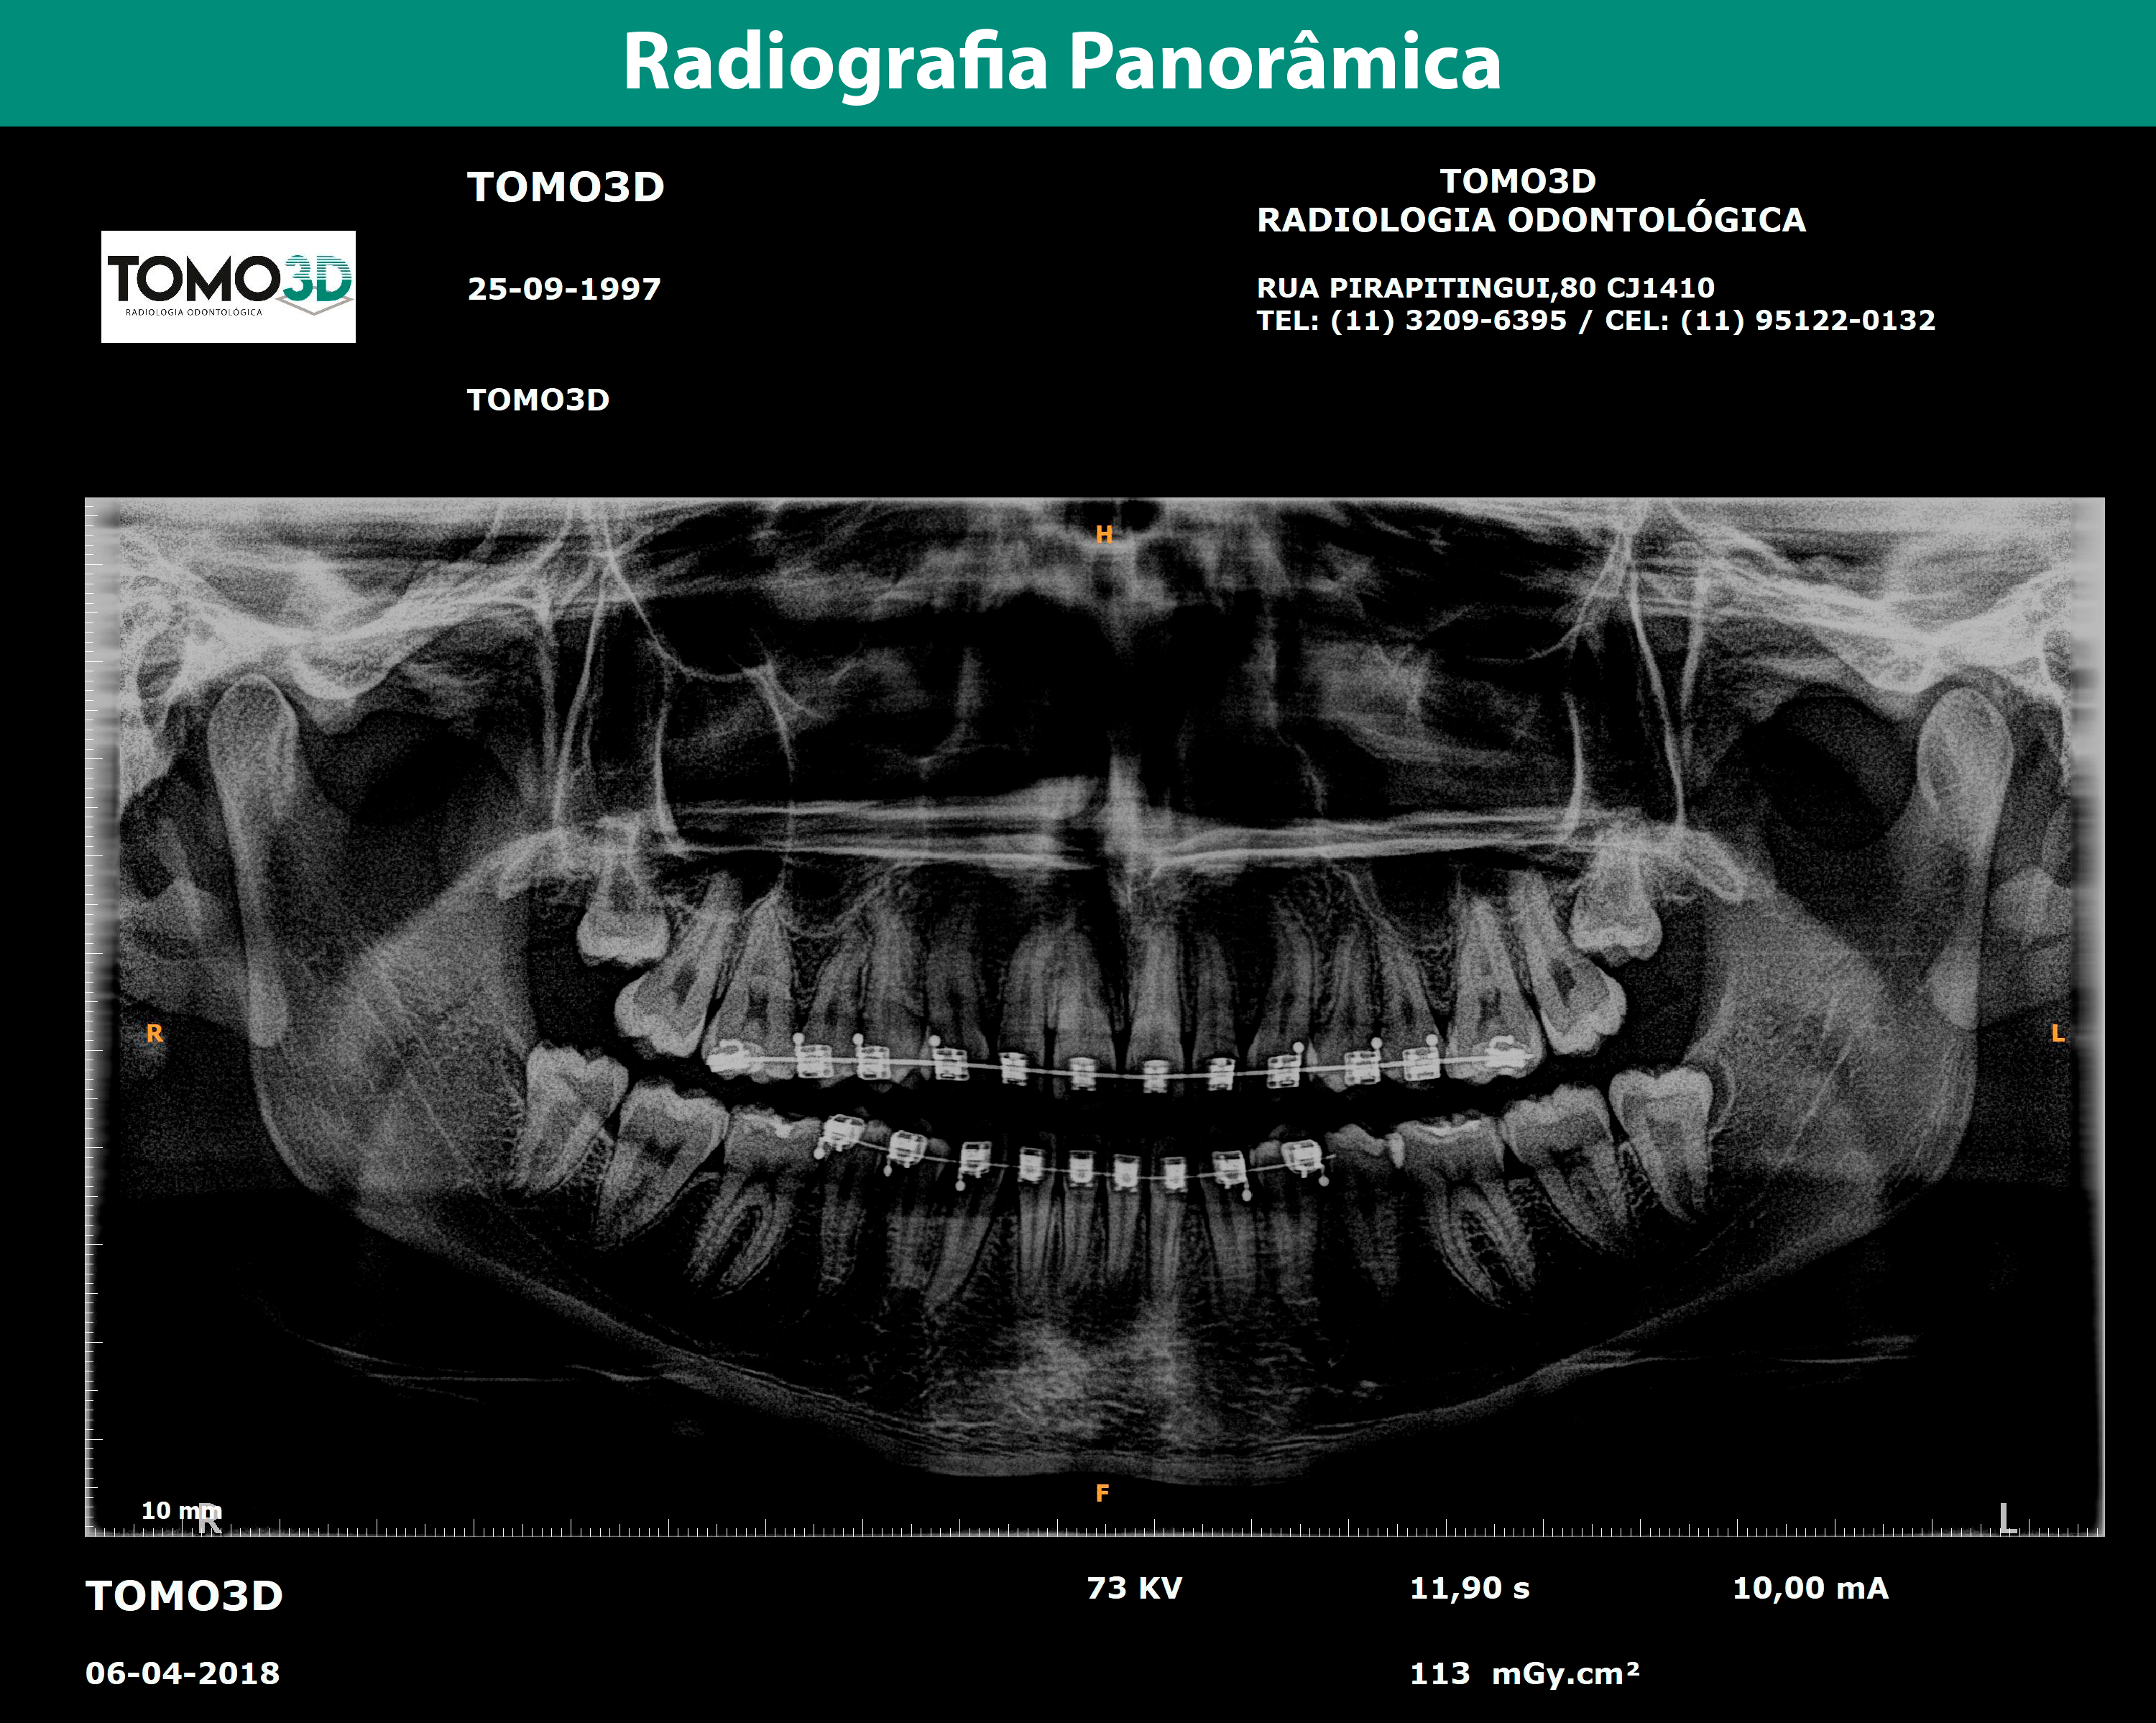 tomo 3d radiologia odontologica em sp